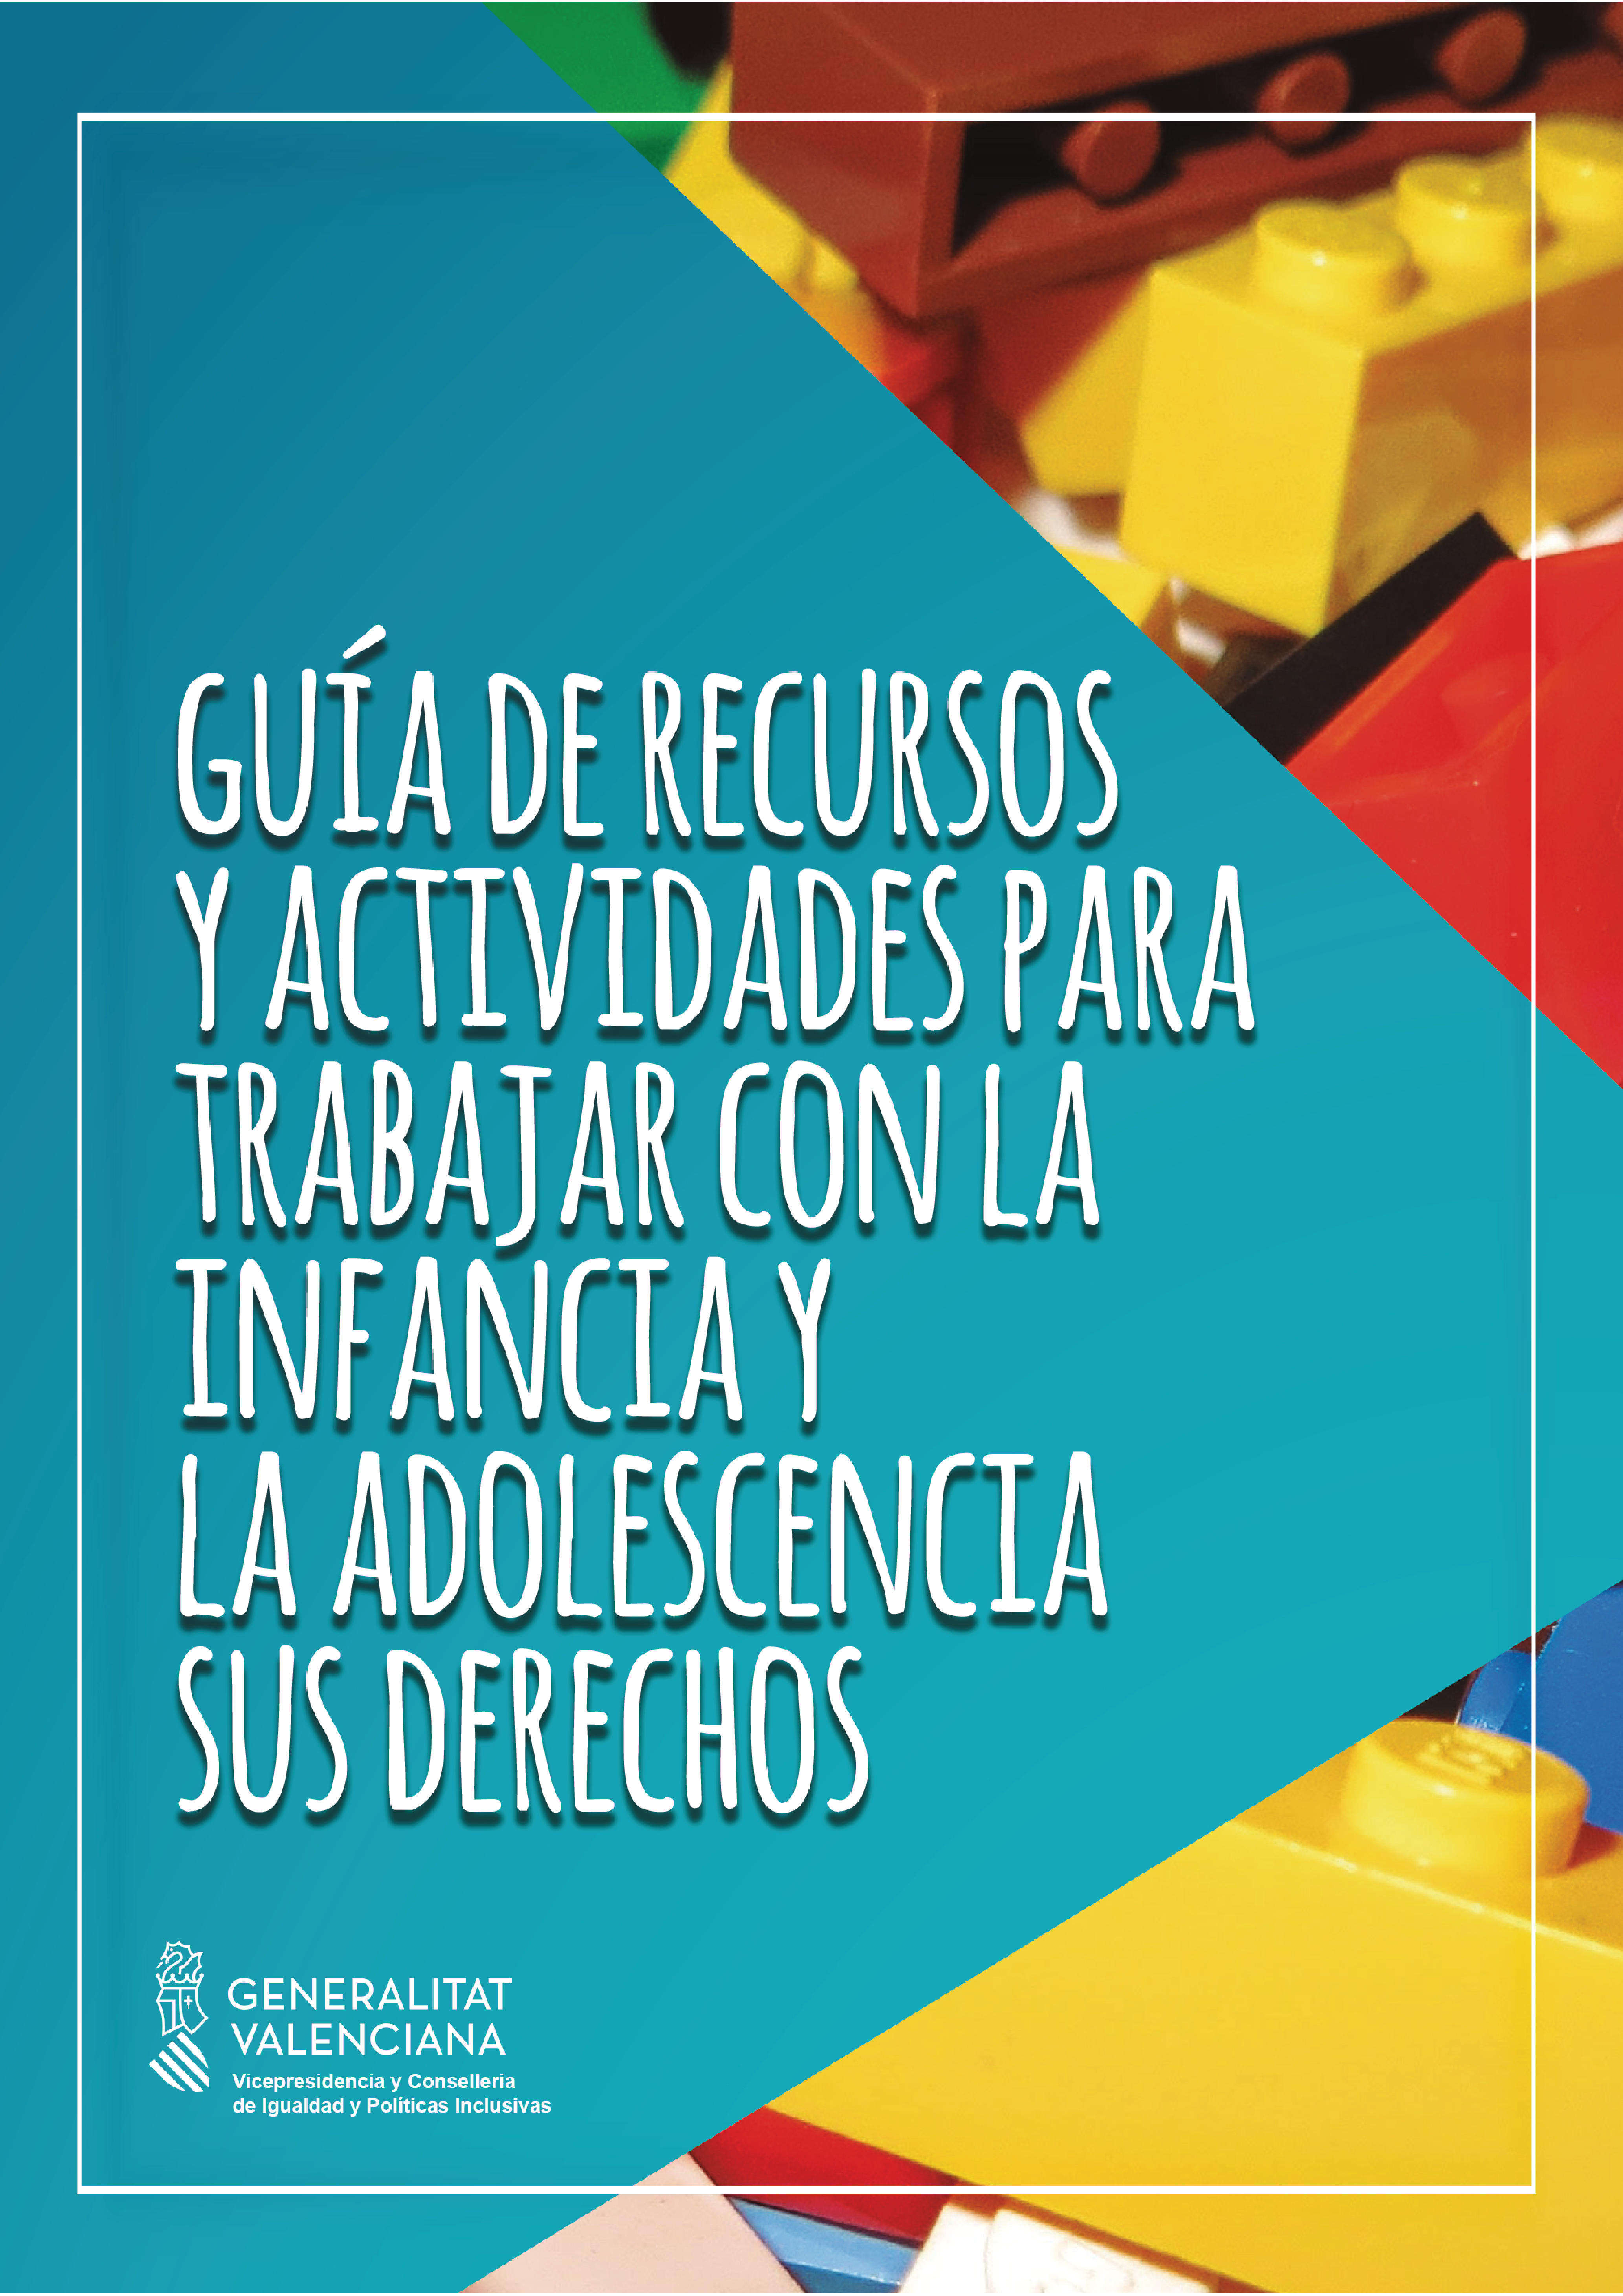 Guía de recursos y actividades para trabajar con la infancia y adolescencia sus derechos